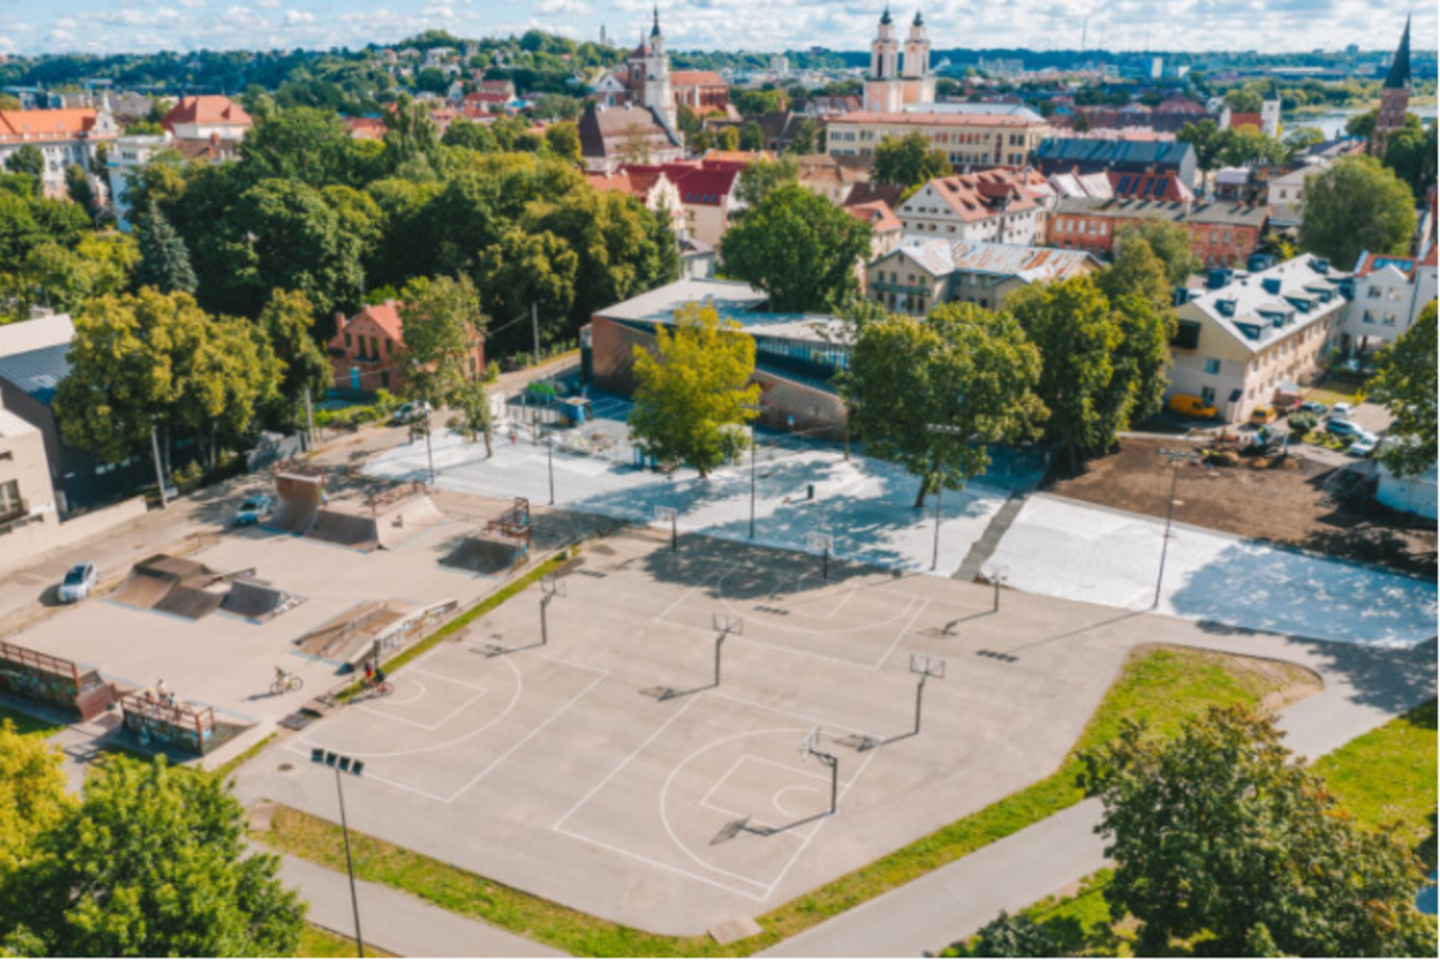 Baigtas pirmasis Lietuvos „Krepšinio namų“ projekto etapas, įvyko pirmieji renginiai.<br>A.Aleksandravičiaus nuotr.